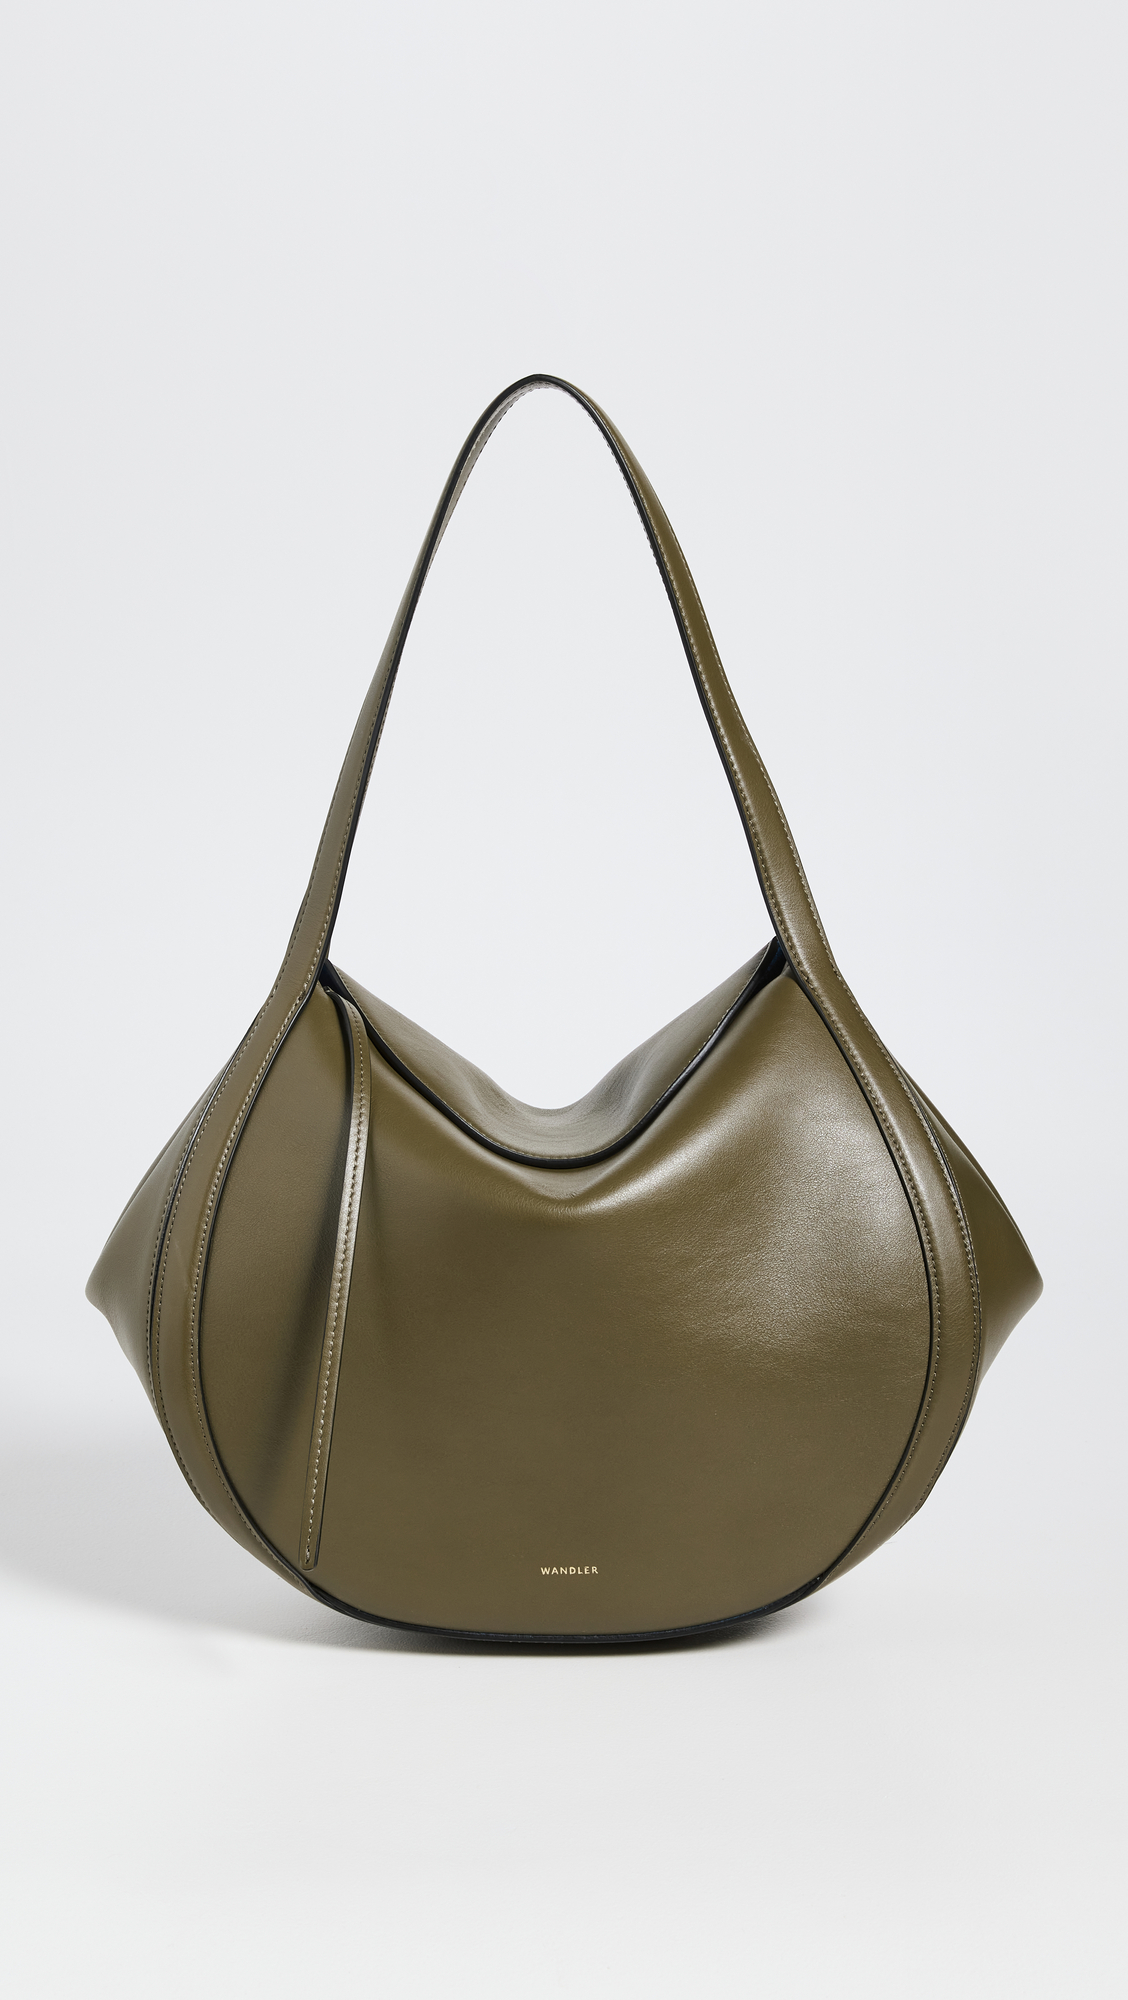 shopbop designer bags on sale 307448 1684962550562